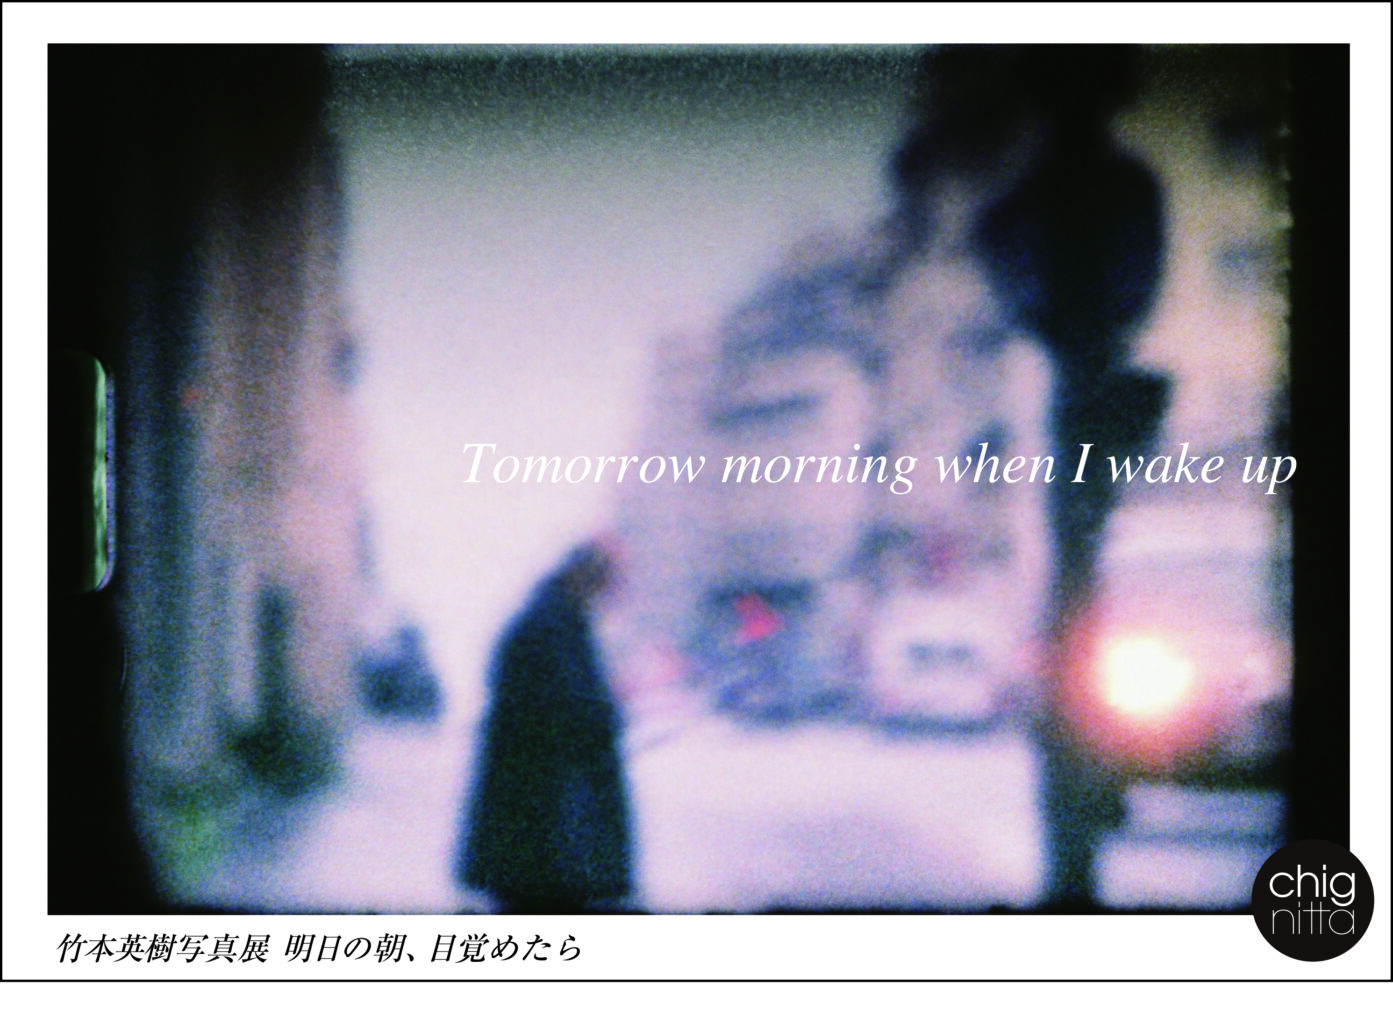 chignitta spaceにて、竹本英樹写真展 「明日の朝、目覚めたら」。8ミリフィルムを使い、世界各地の日常風景を捉えた作品を展示。